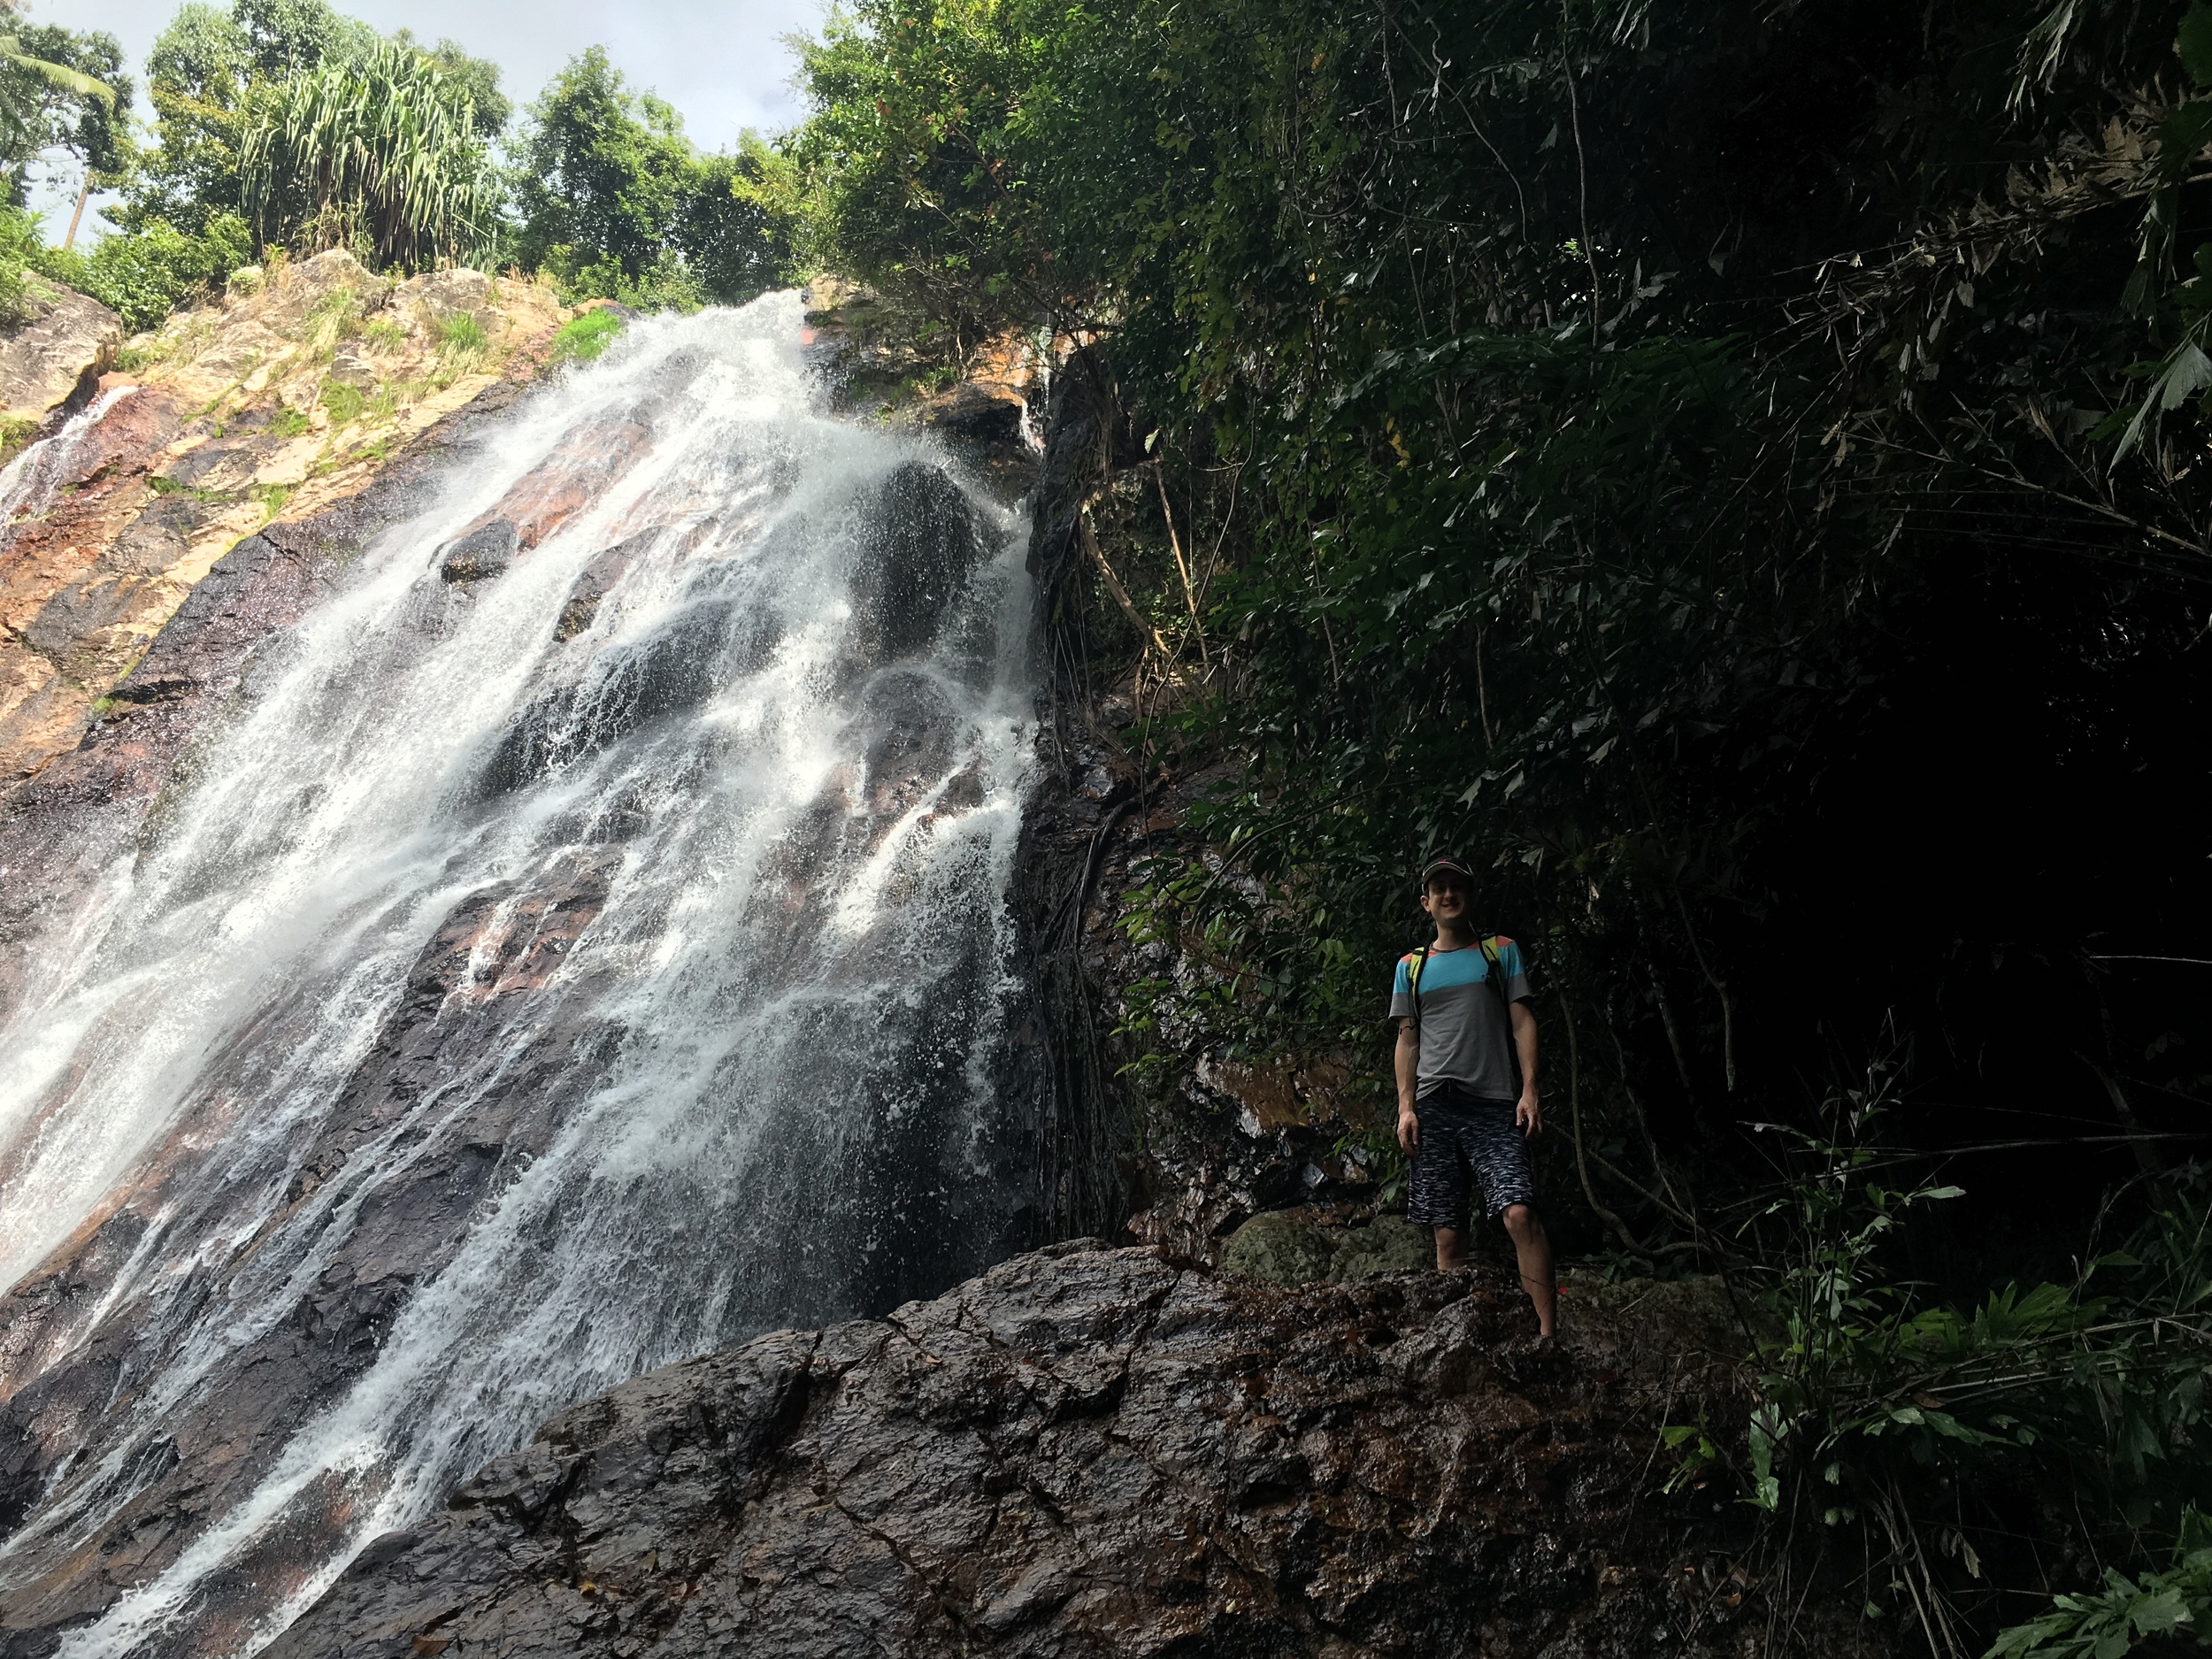 Scott and waterfall